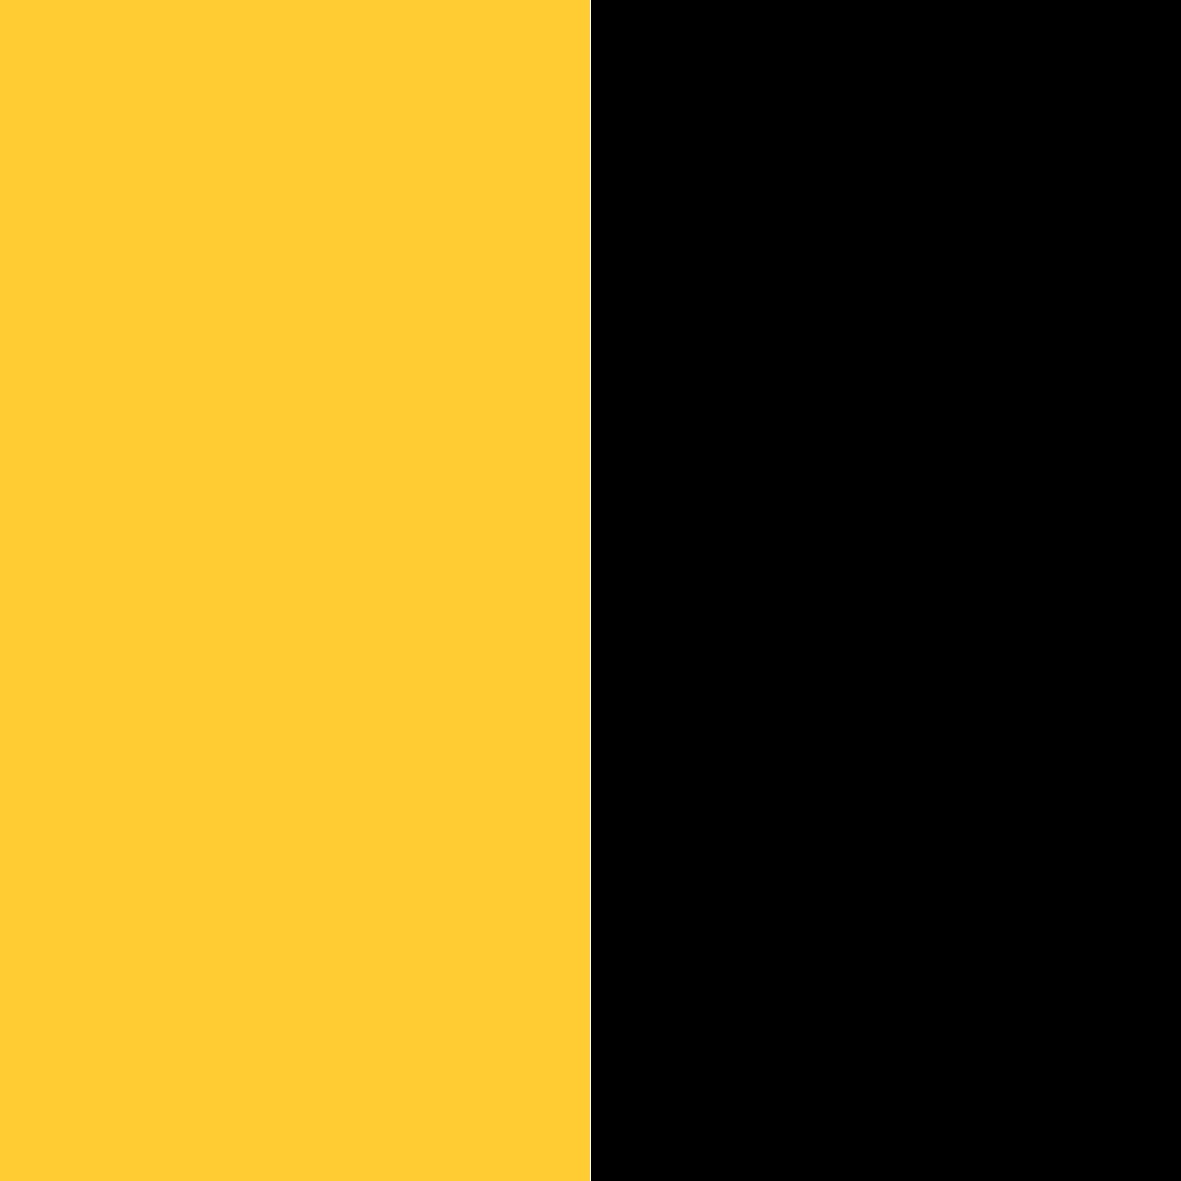 желтый/черный_FFCC33/000000